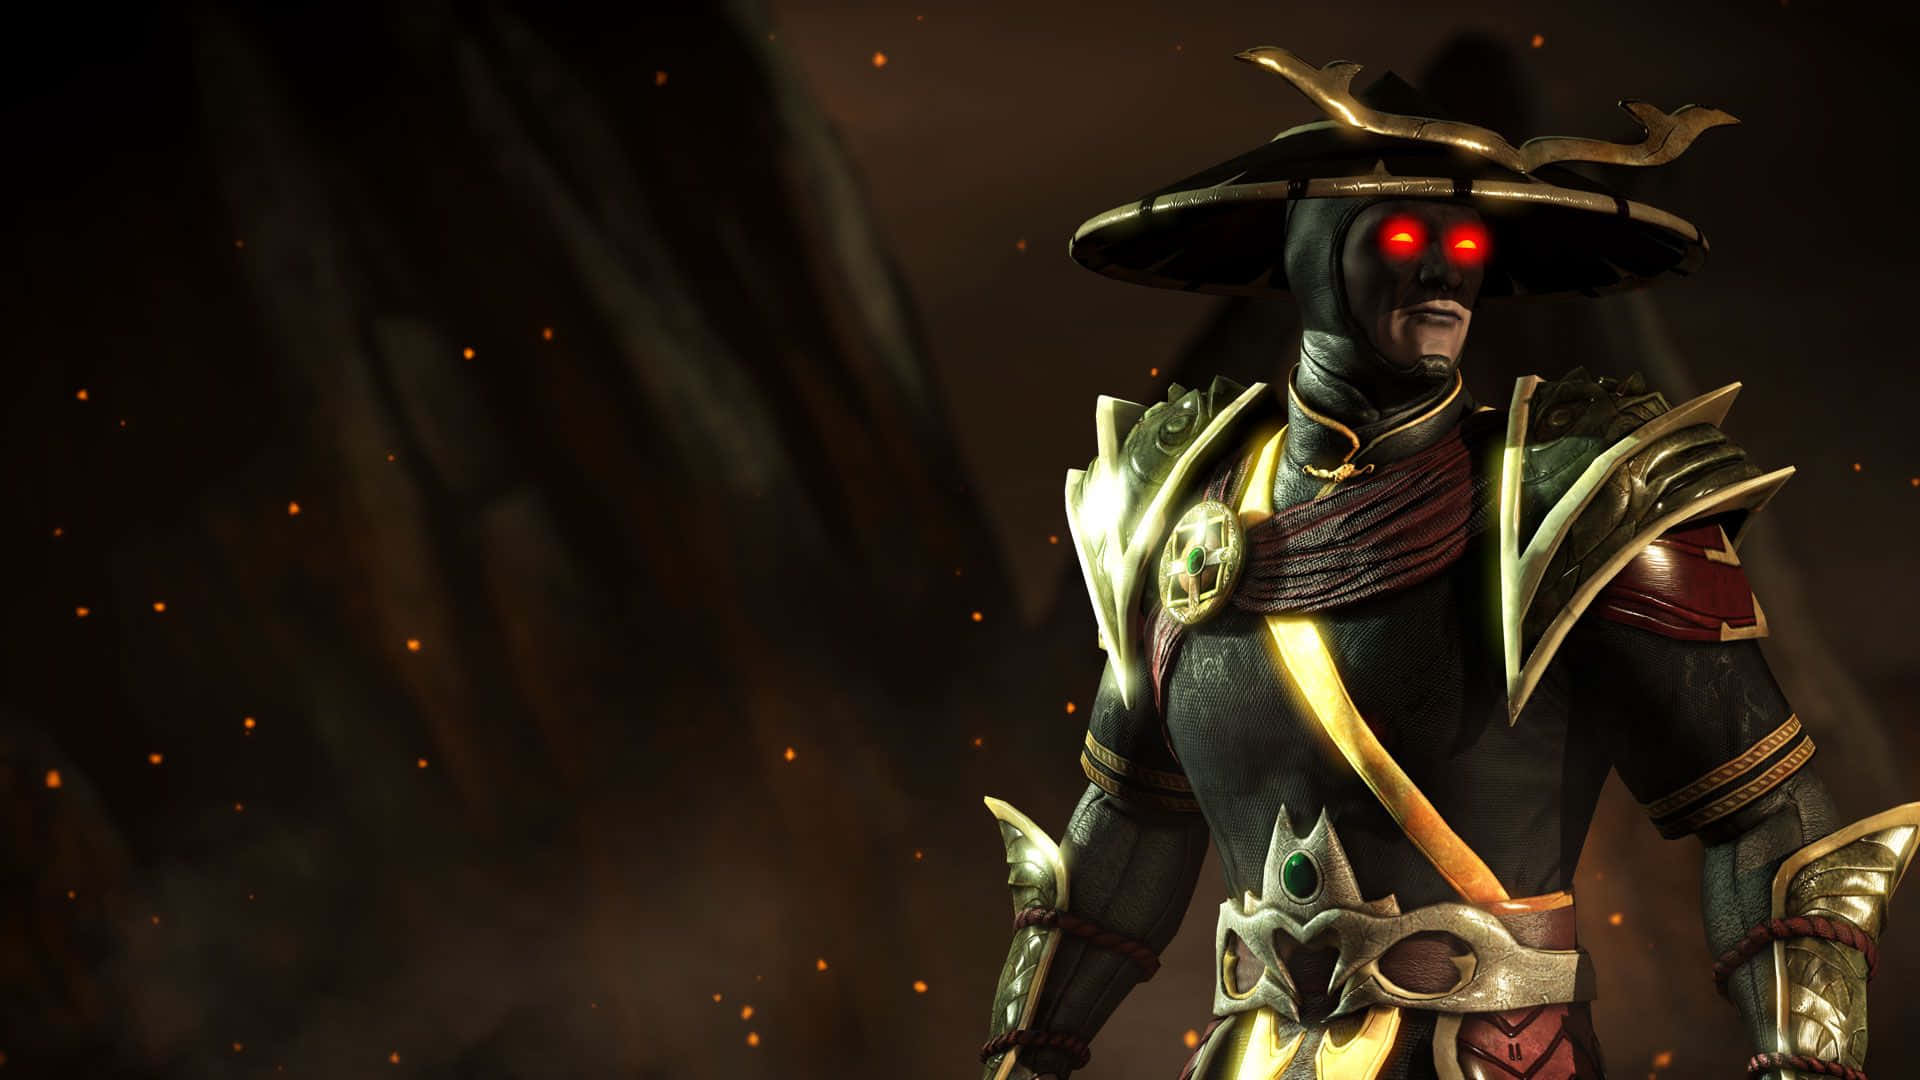 Raiden summoning lightning in Mortal Kombat, the all-powerful God of Thunder. Wallpaper